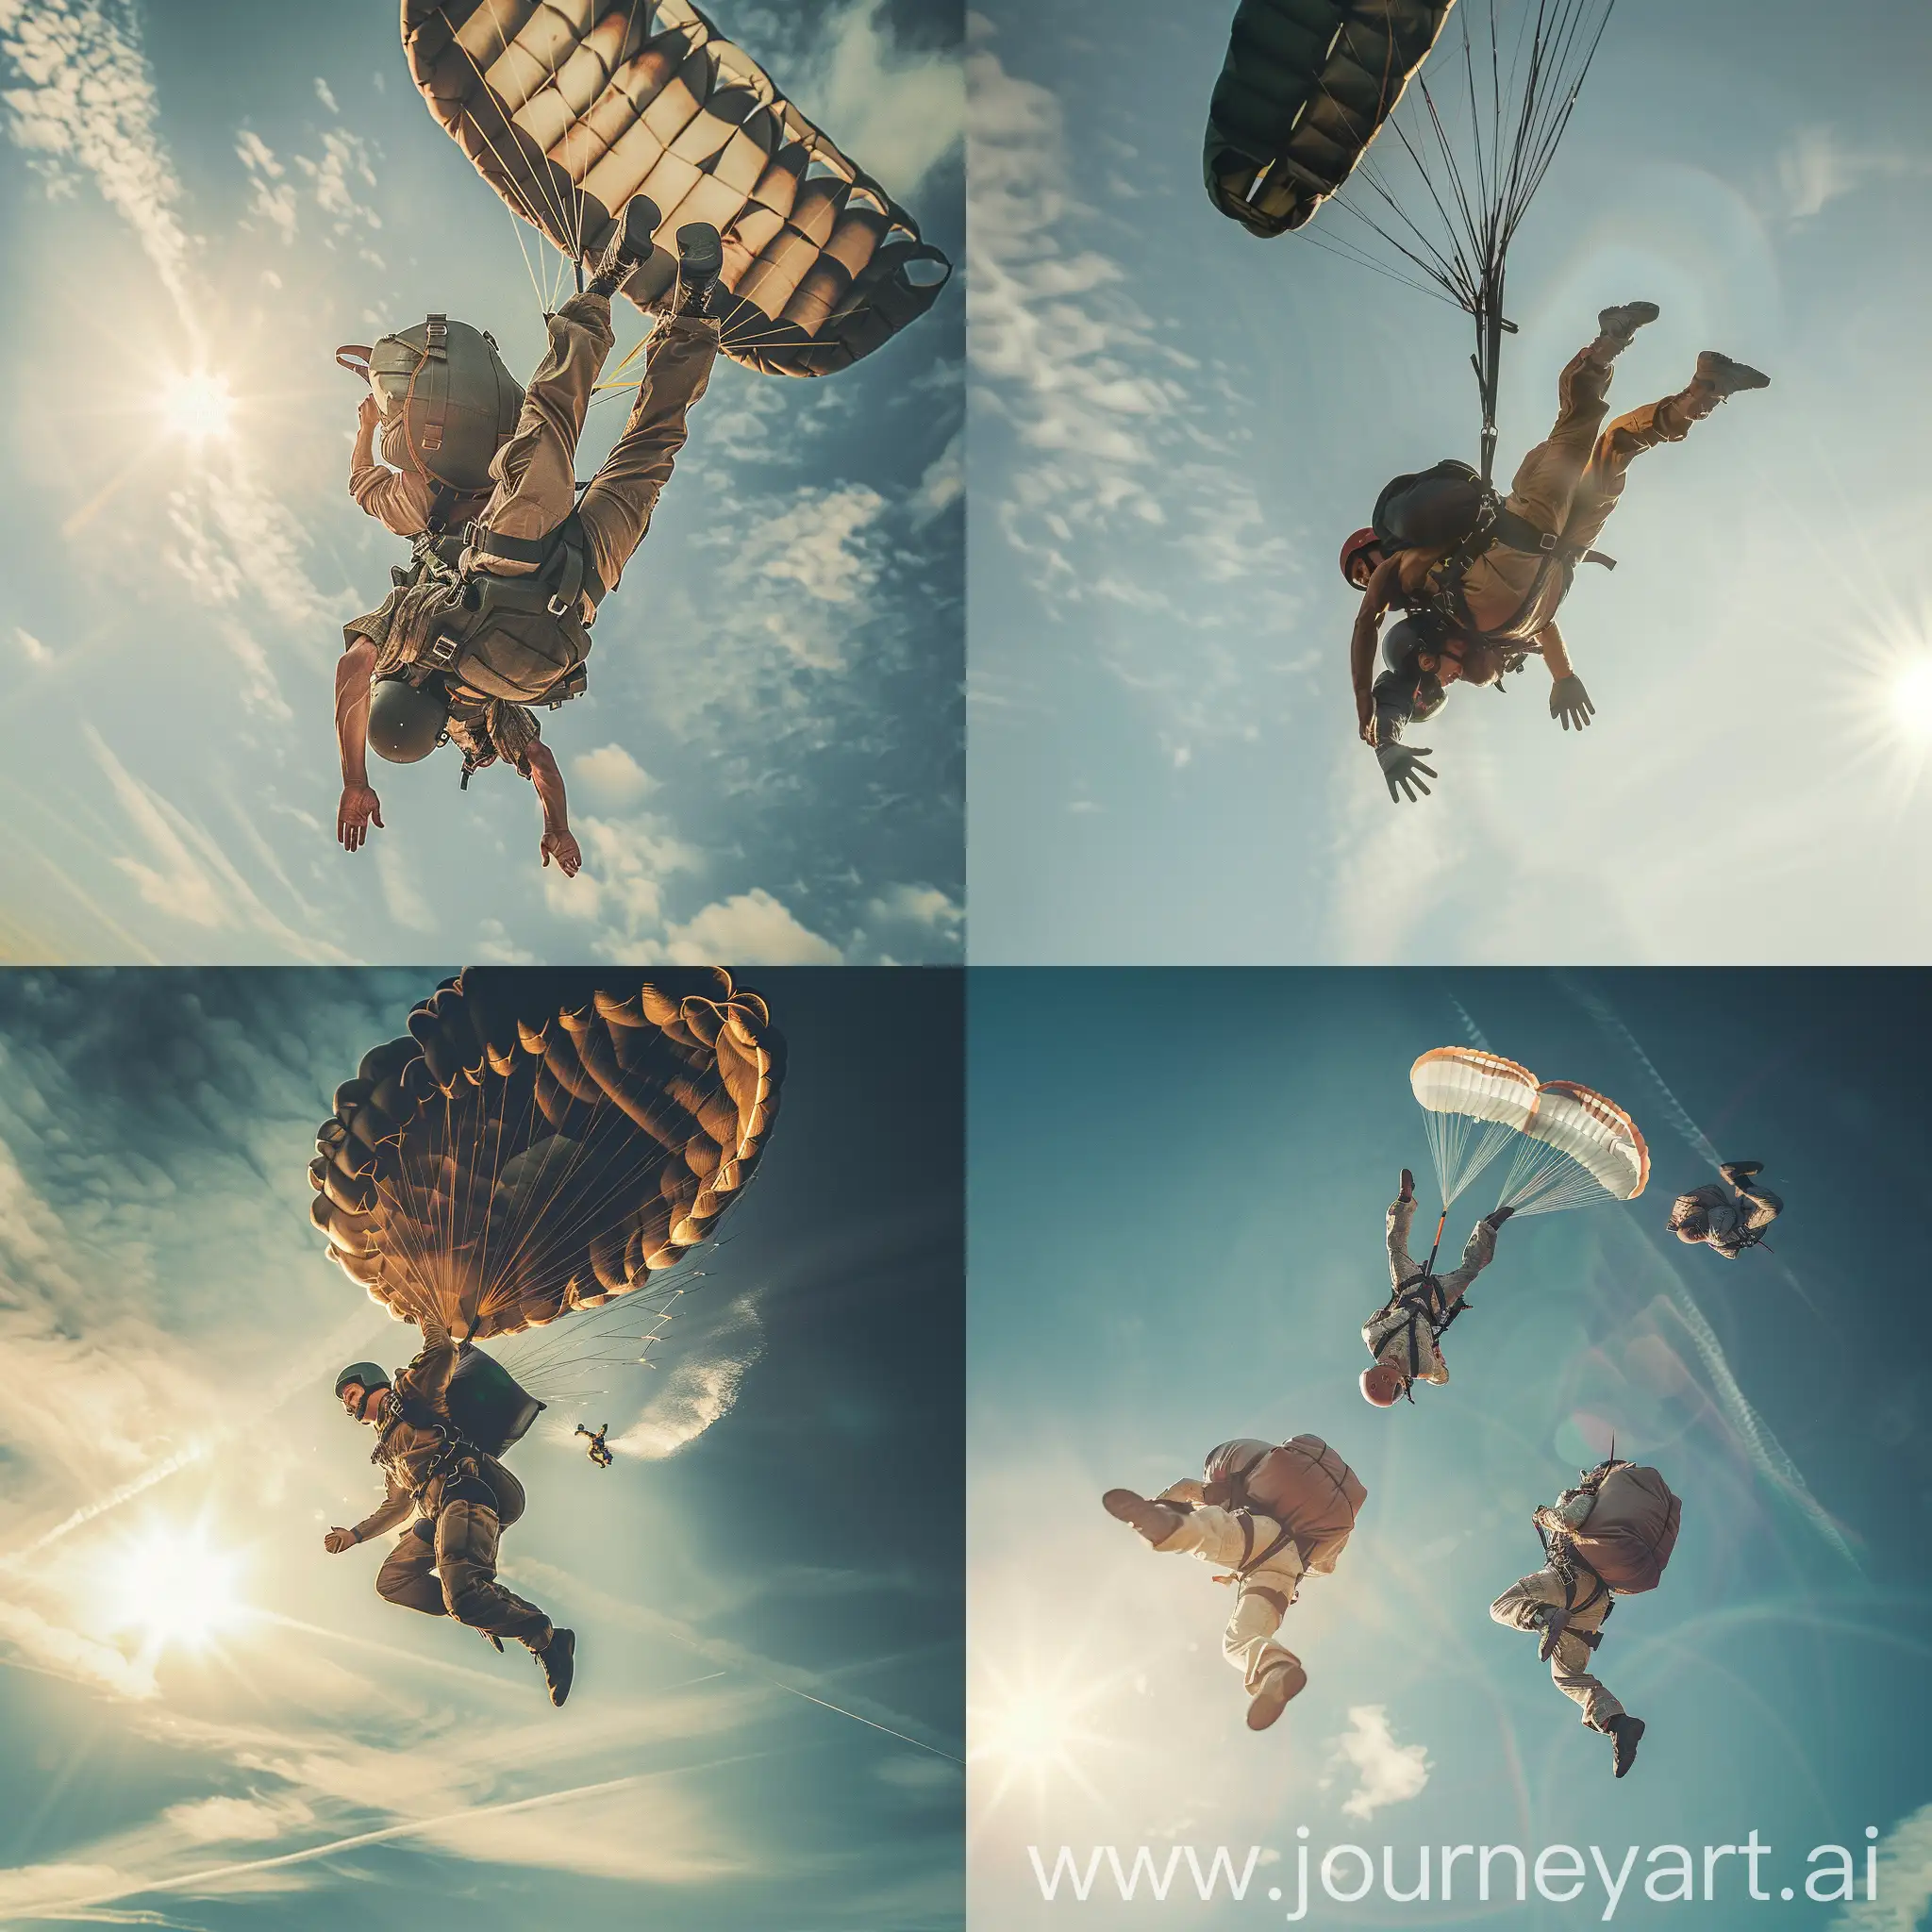 Acrobatic-Paratroopers-Perform-HighSpeed-Upside-Down-Jump